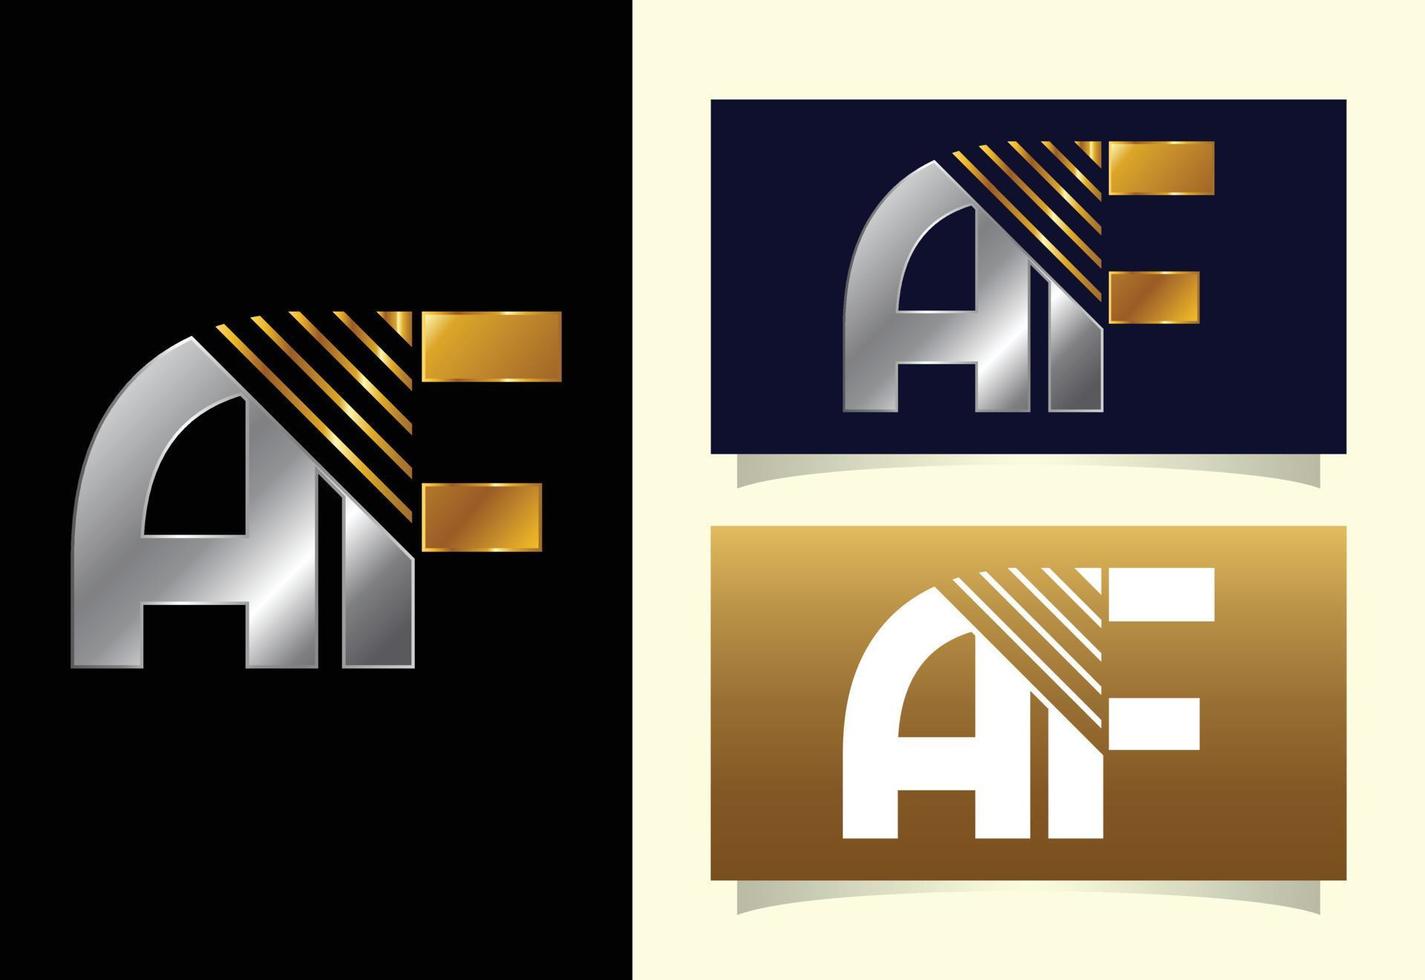 Anfangsbuchstabe af-Logo-Design-Vorlage. grafisches alphabetsymbol für unternehmensidentität vektor